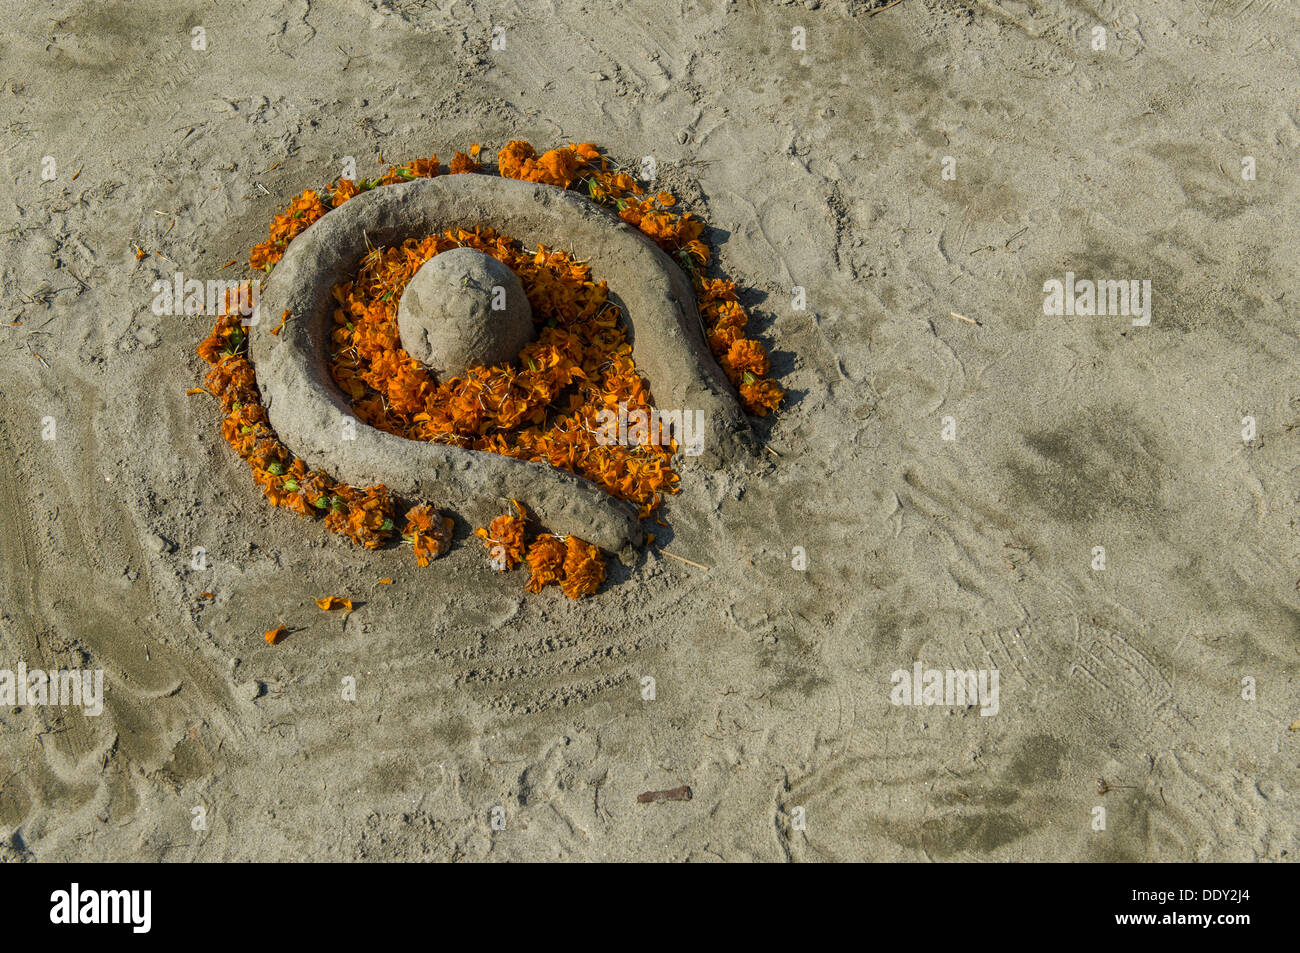 Shiva Lingam made of sand and flowers, during Kumbha Mela Stock Photo